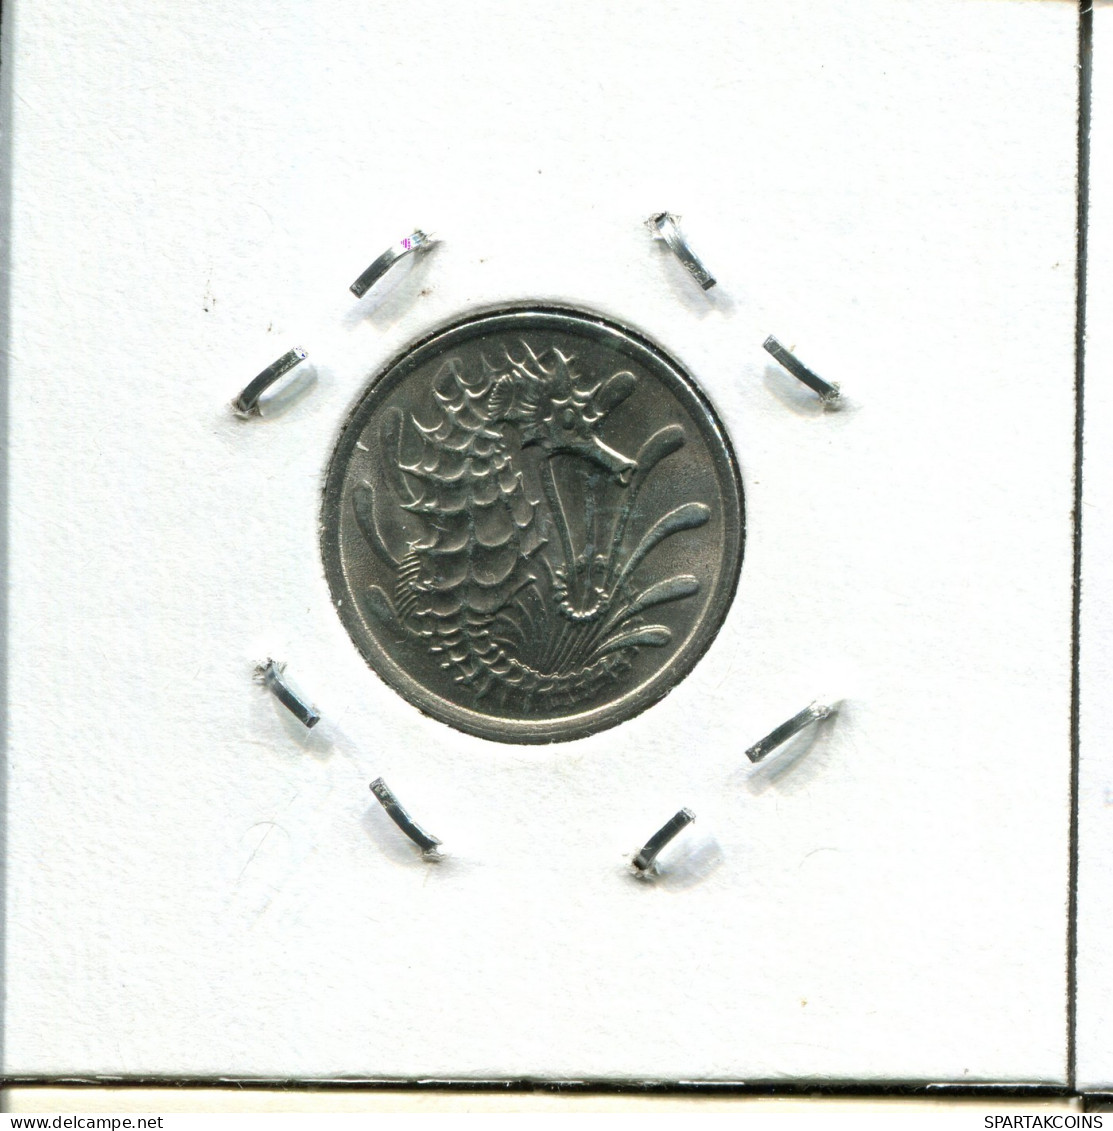 10 CENTS 1982 SINGAPUR SINGAPORE Moneda #AX122.E.A - Singapour